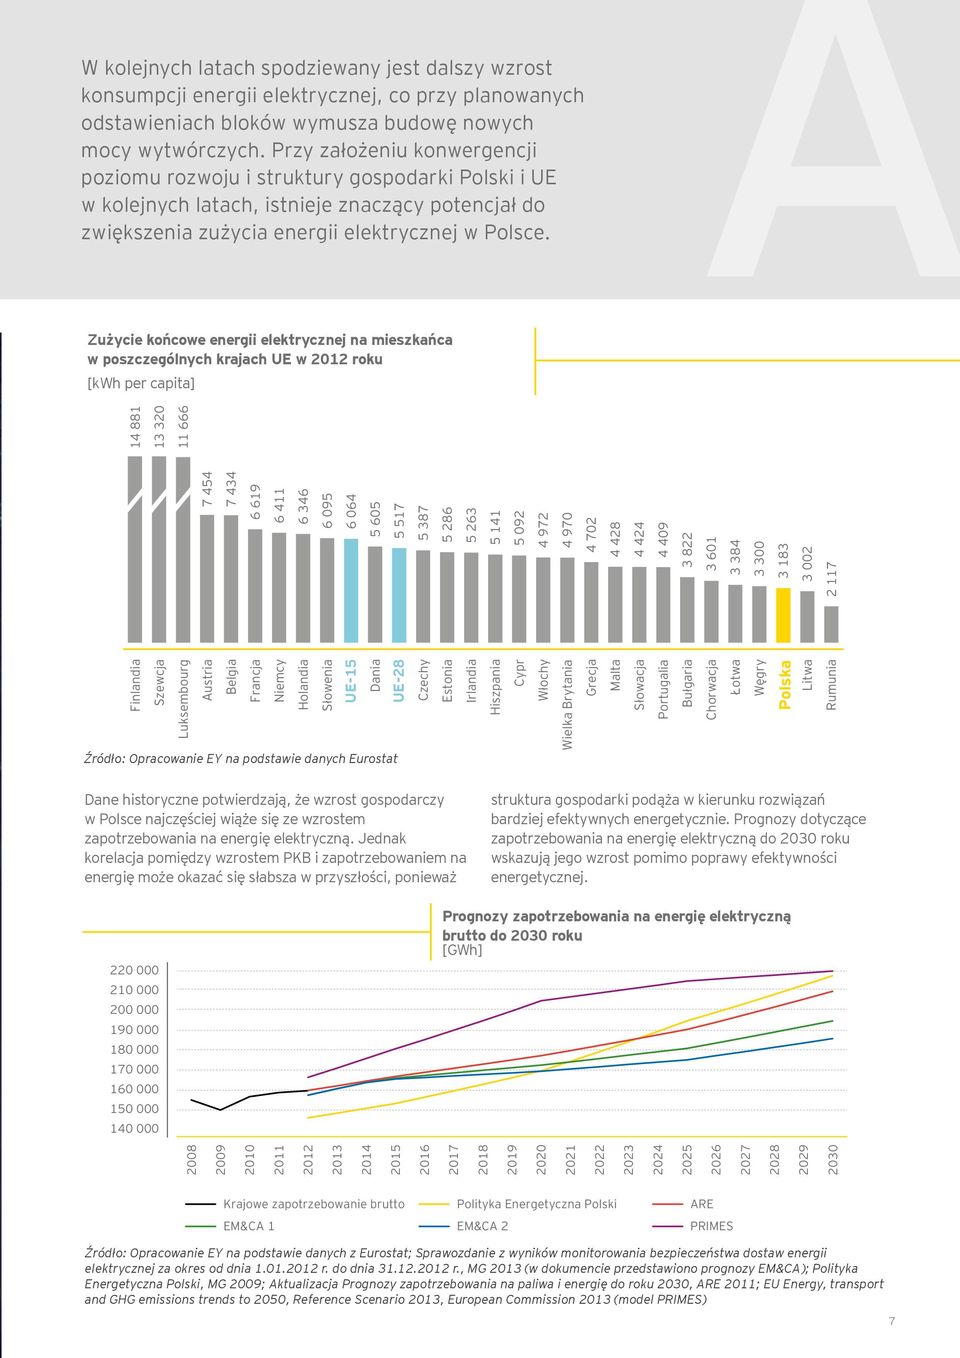 A Zużycie końcowe energii elektrycznej na mieszkańca w poszczególnych krajach UE w 2012 roku [kwh per capita] 7 454 7 434 6 619 6 411 6 346 6 095 6 064 5 605 5 517 5 387 5 286 5 263 5 141 5 092 4 972